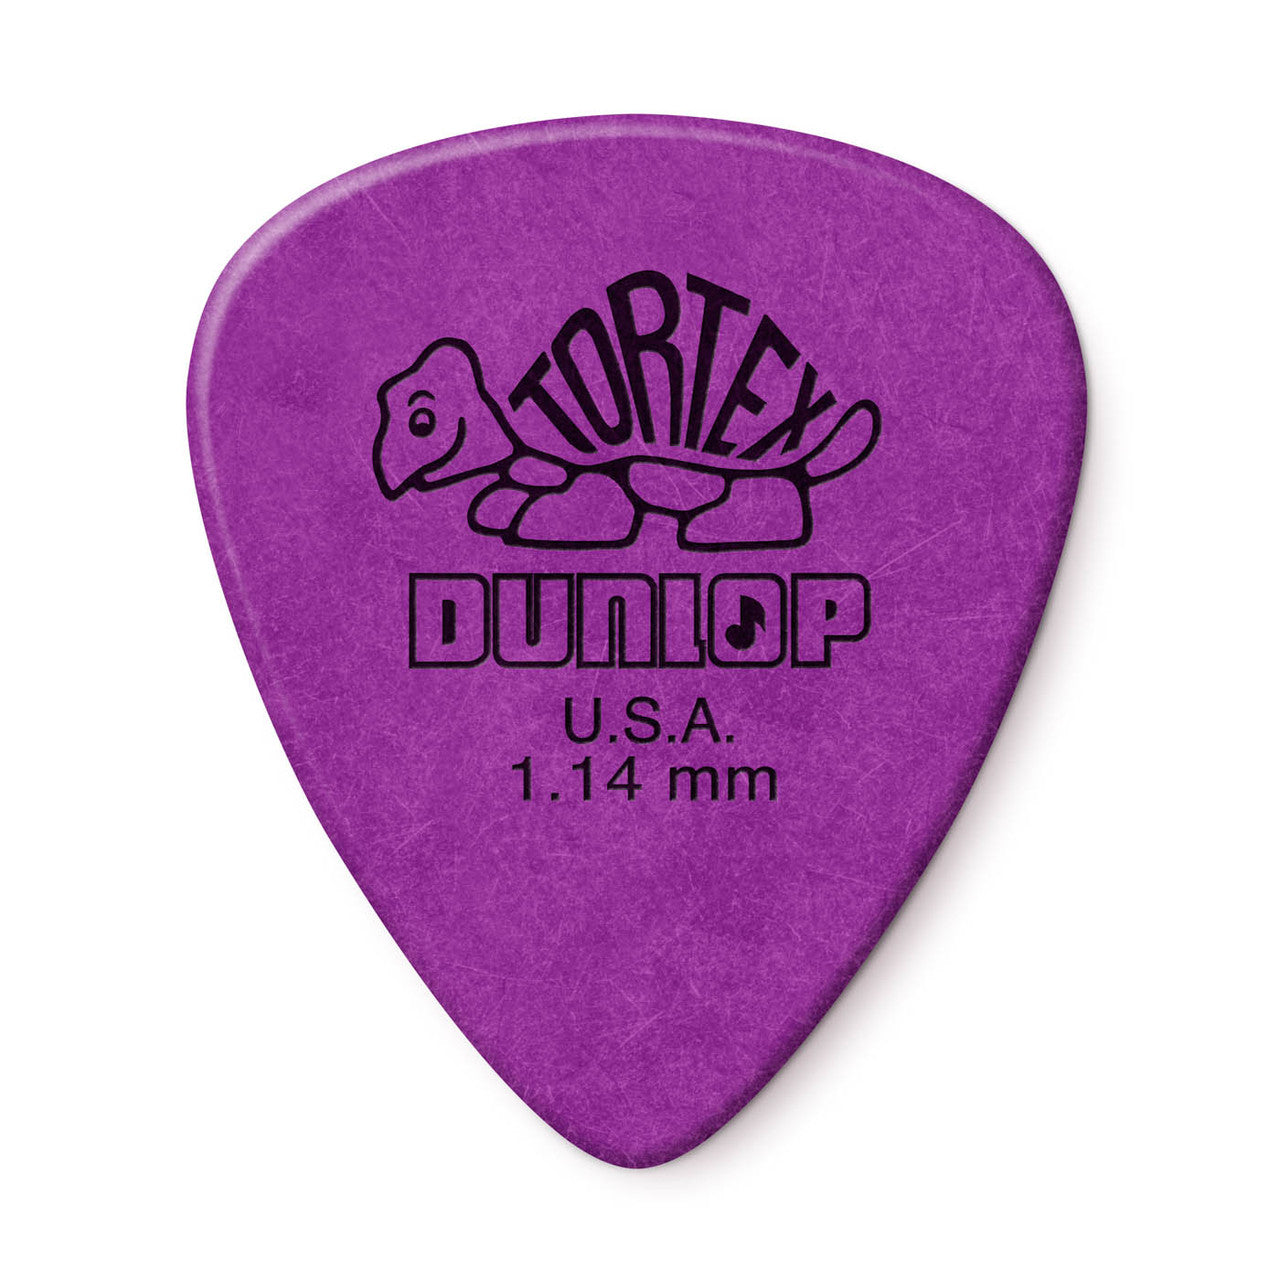 Dunlop Tortex "Standards" Guitar Picks